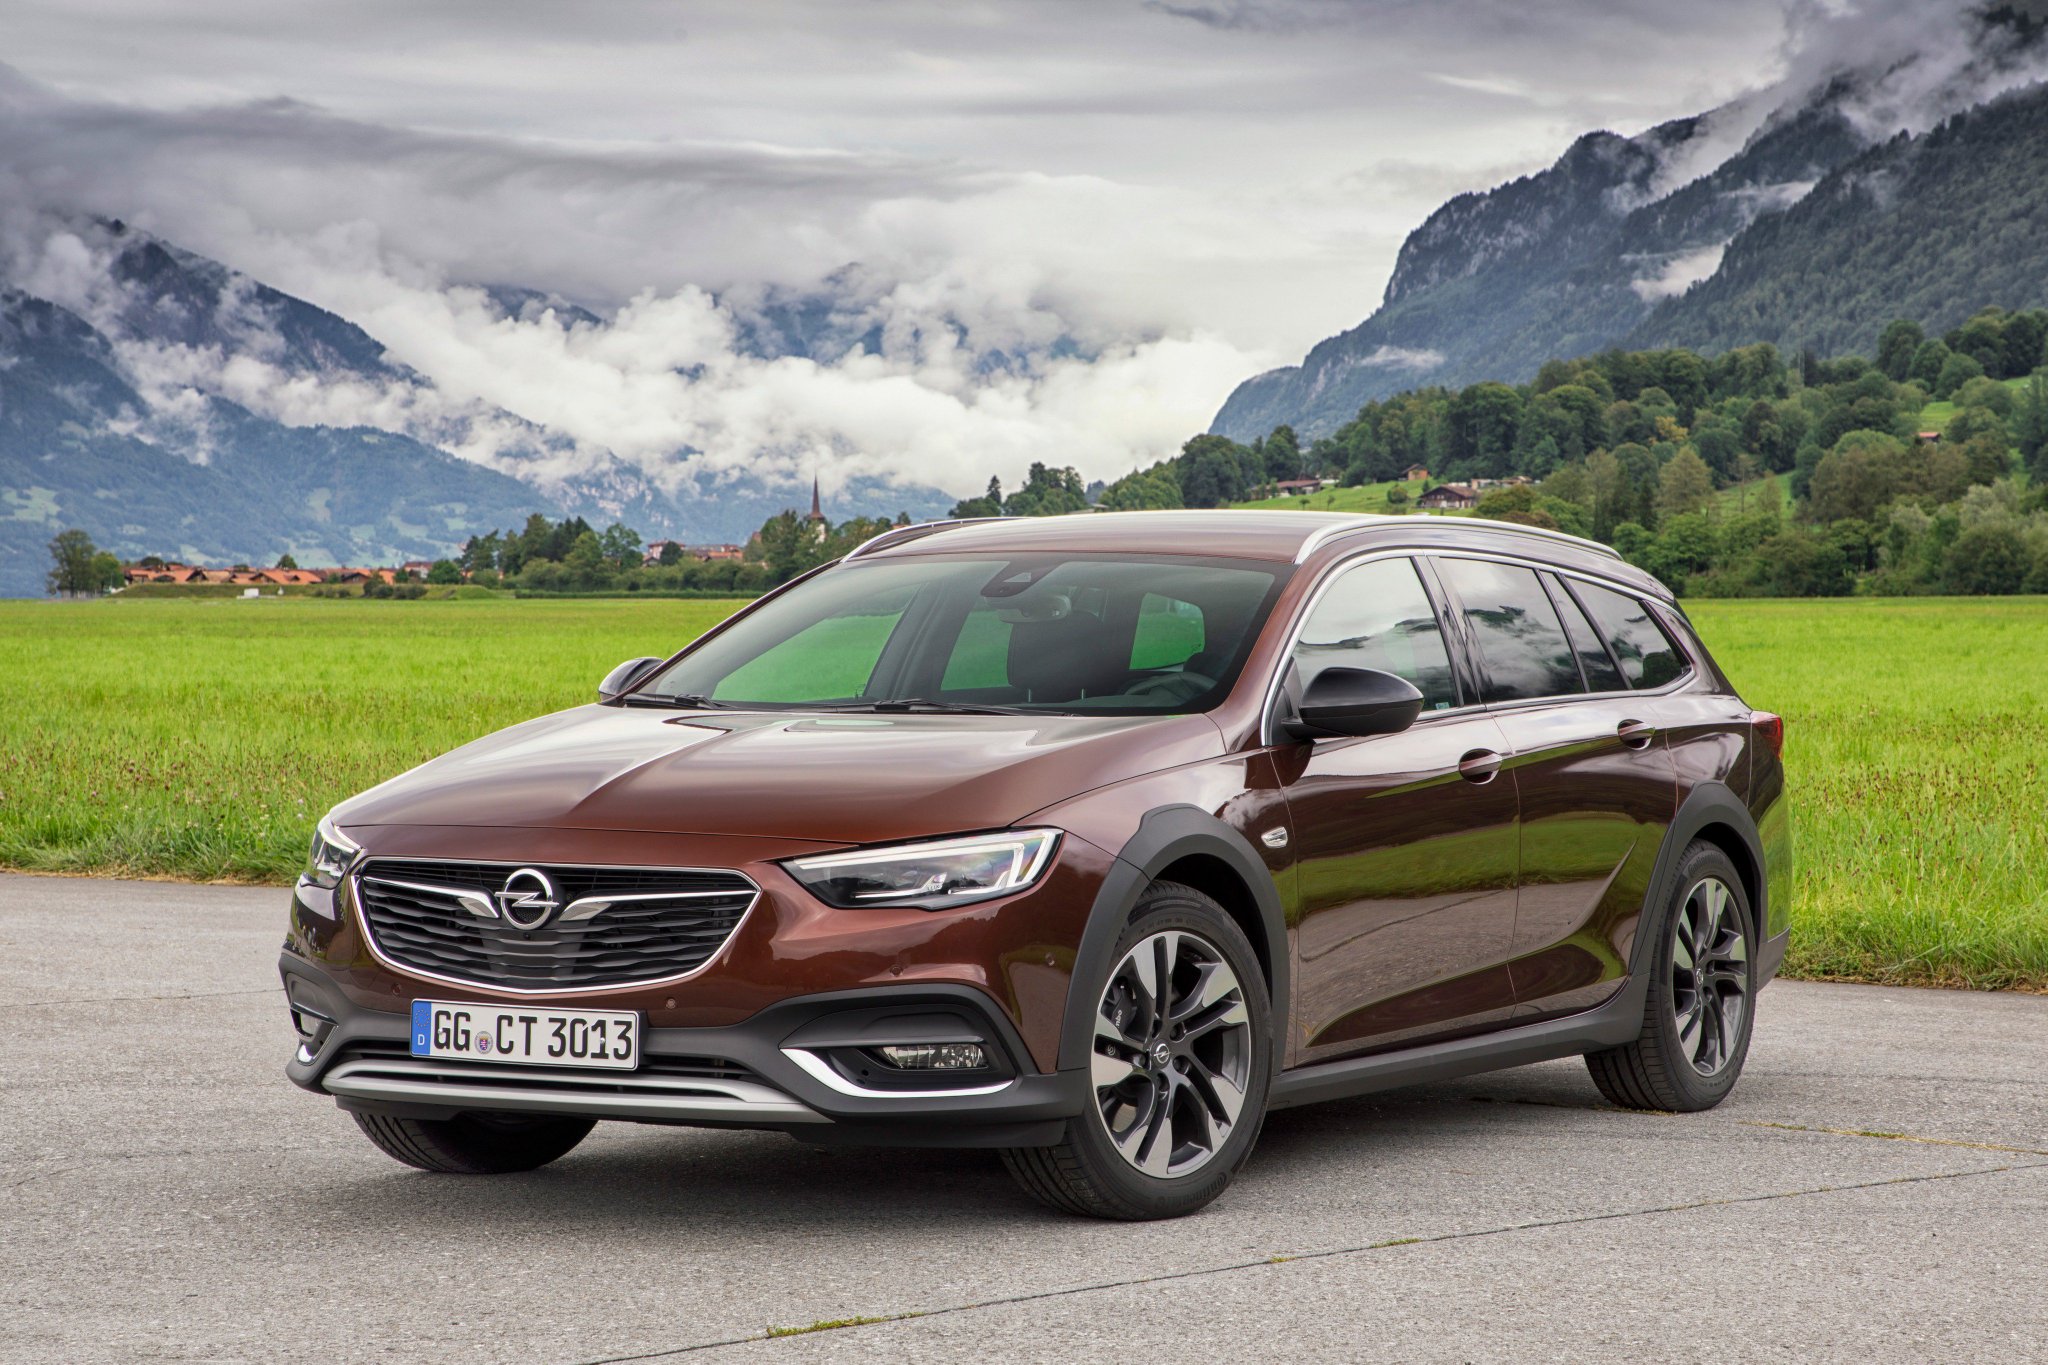 Опель марка какой страны: Где производят Opel | AvtoCar.su